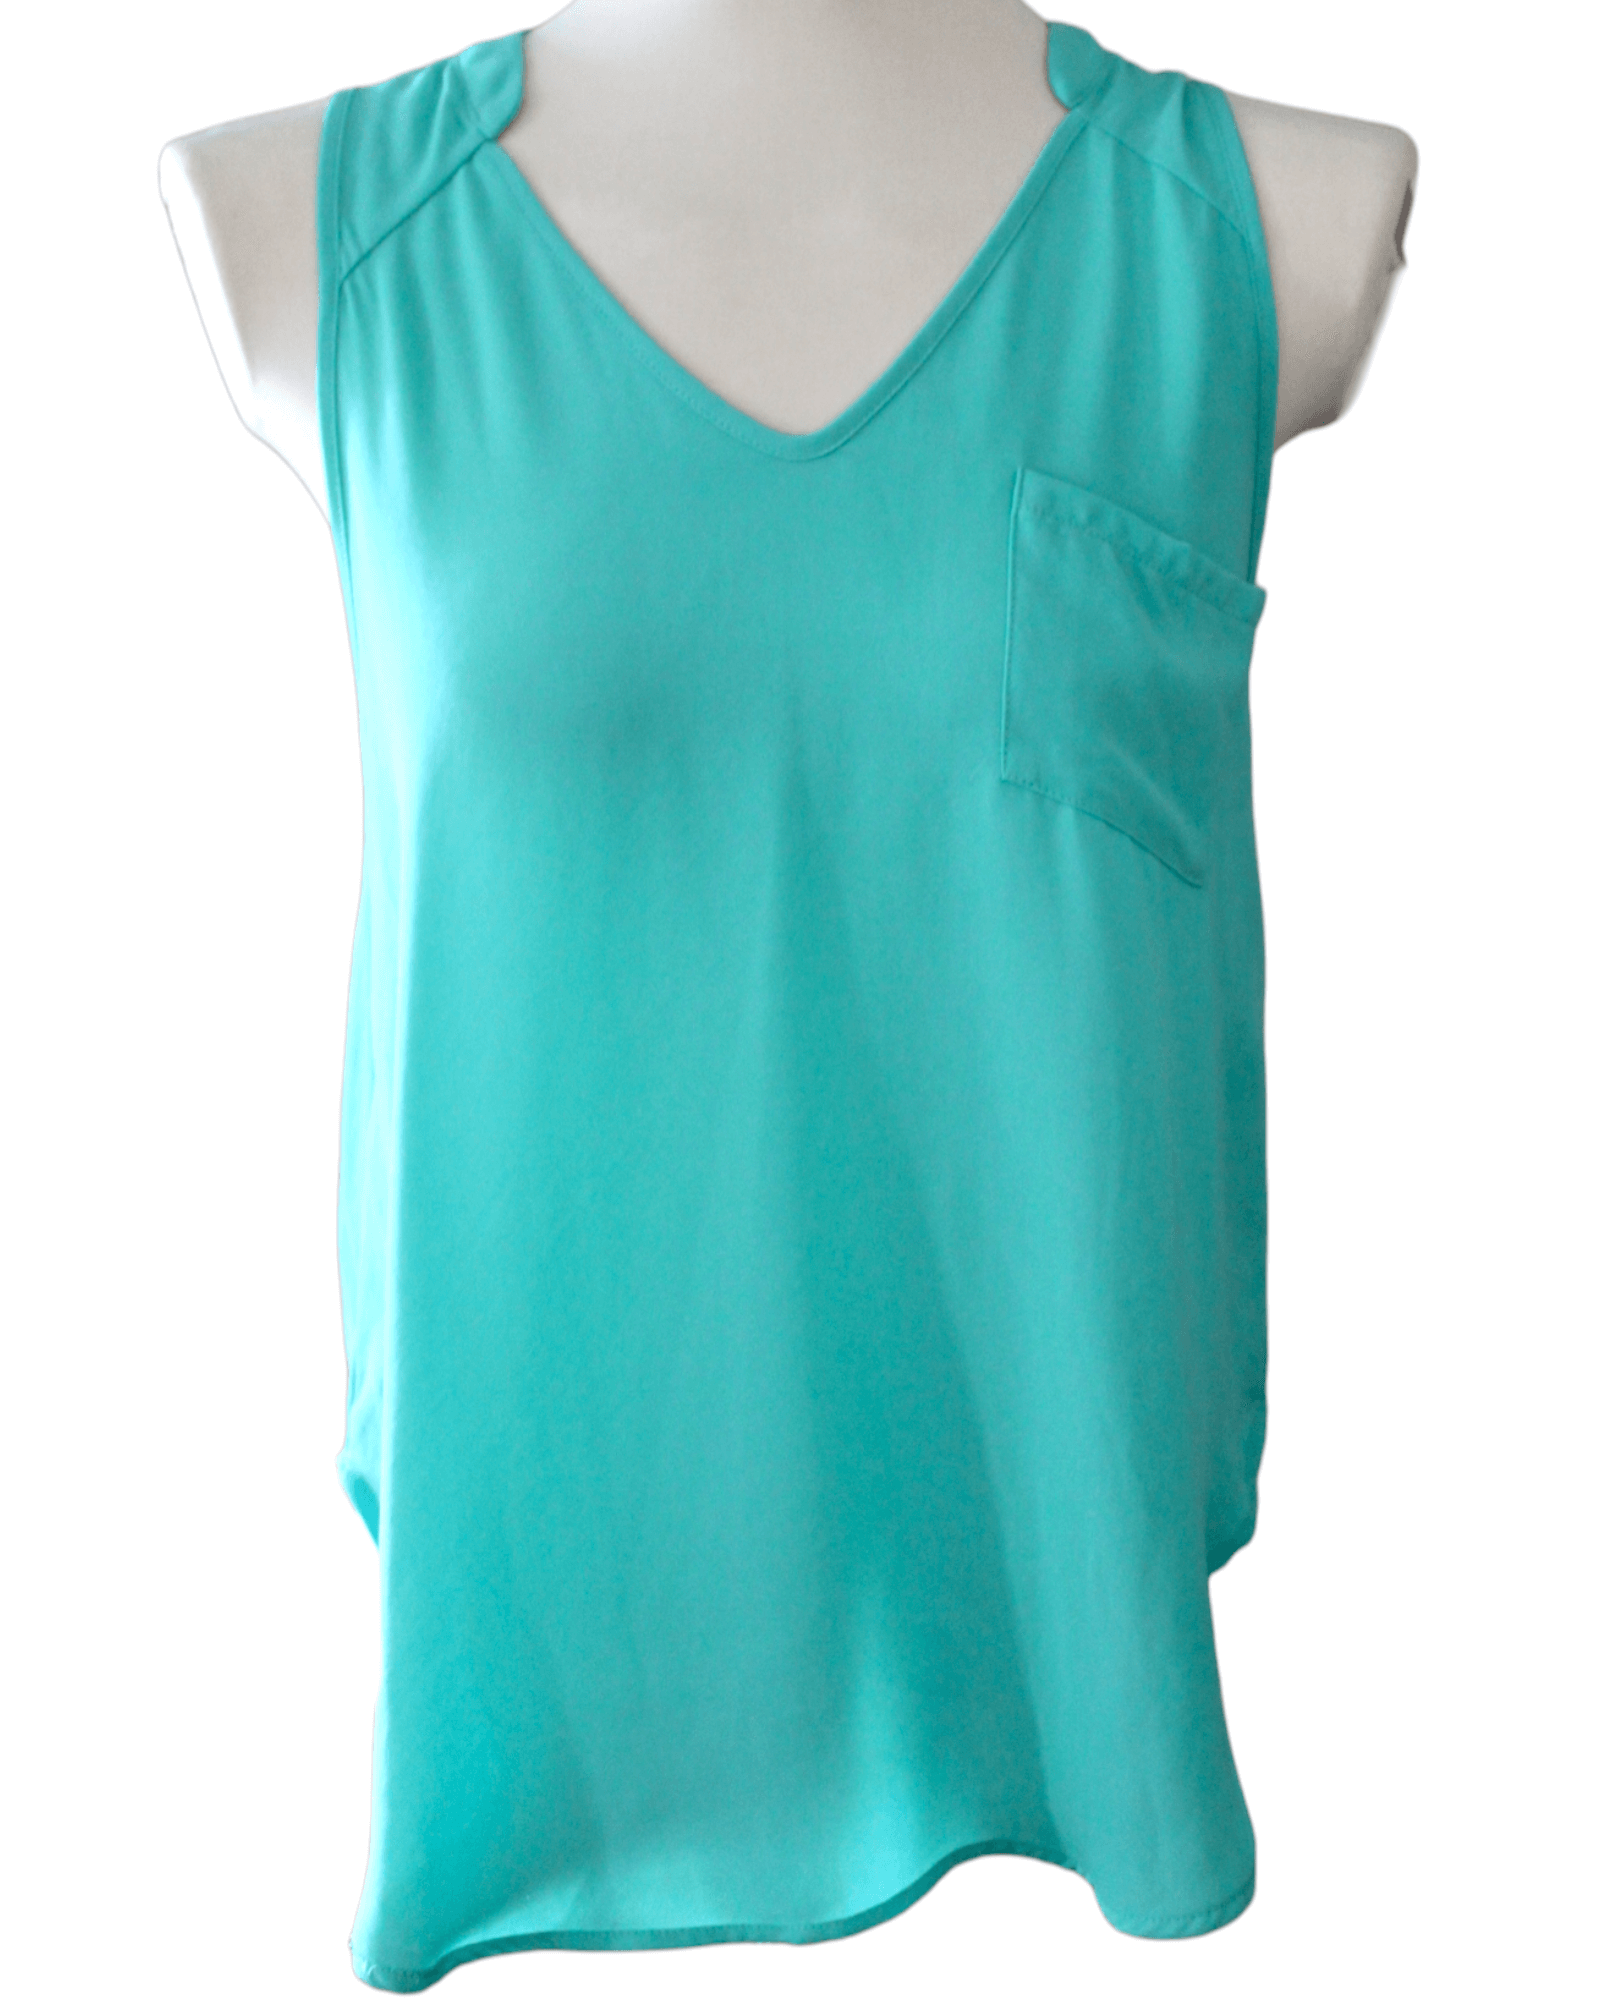 Cool Summer LUSH mint green sleeveless pocket top